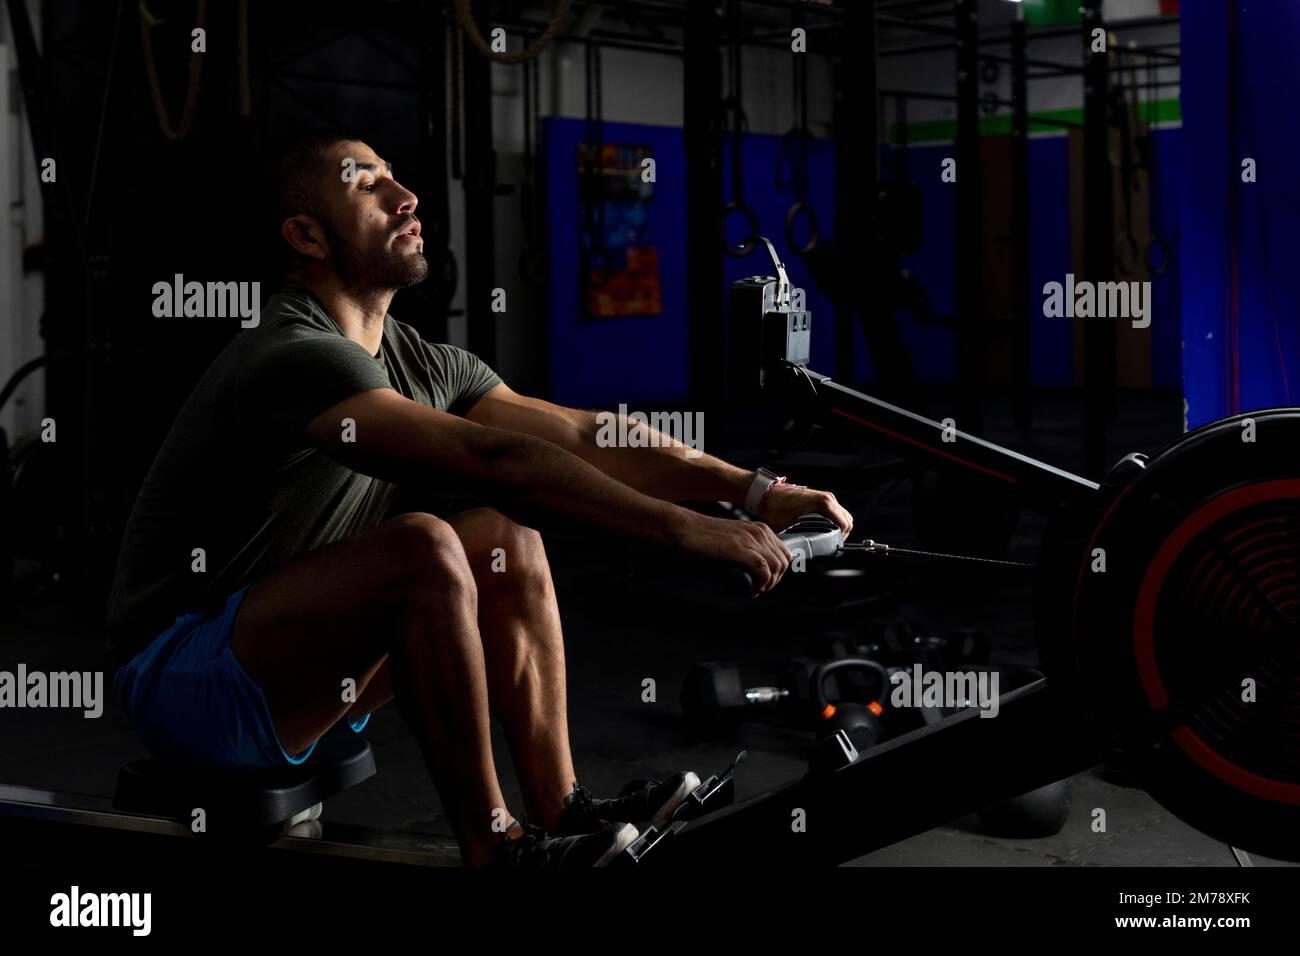 Aufnahme eines Athleten bei schwachem Licht, der in einem Fitnessstudio rudert Stockfoto